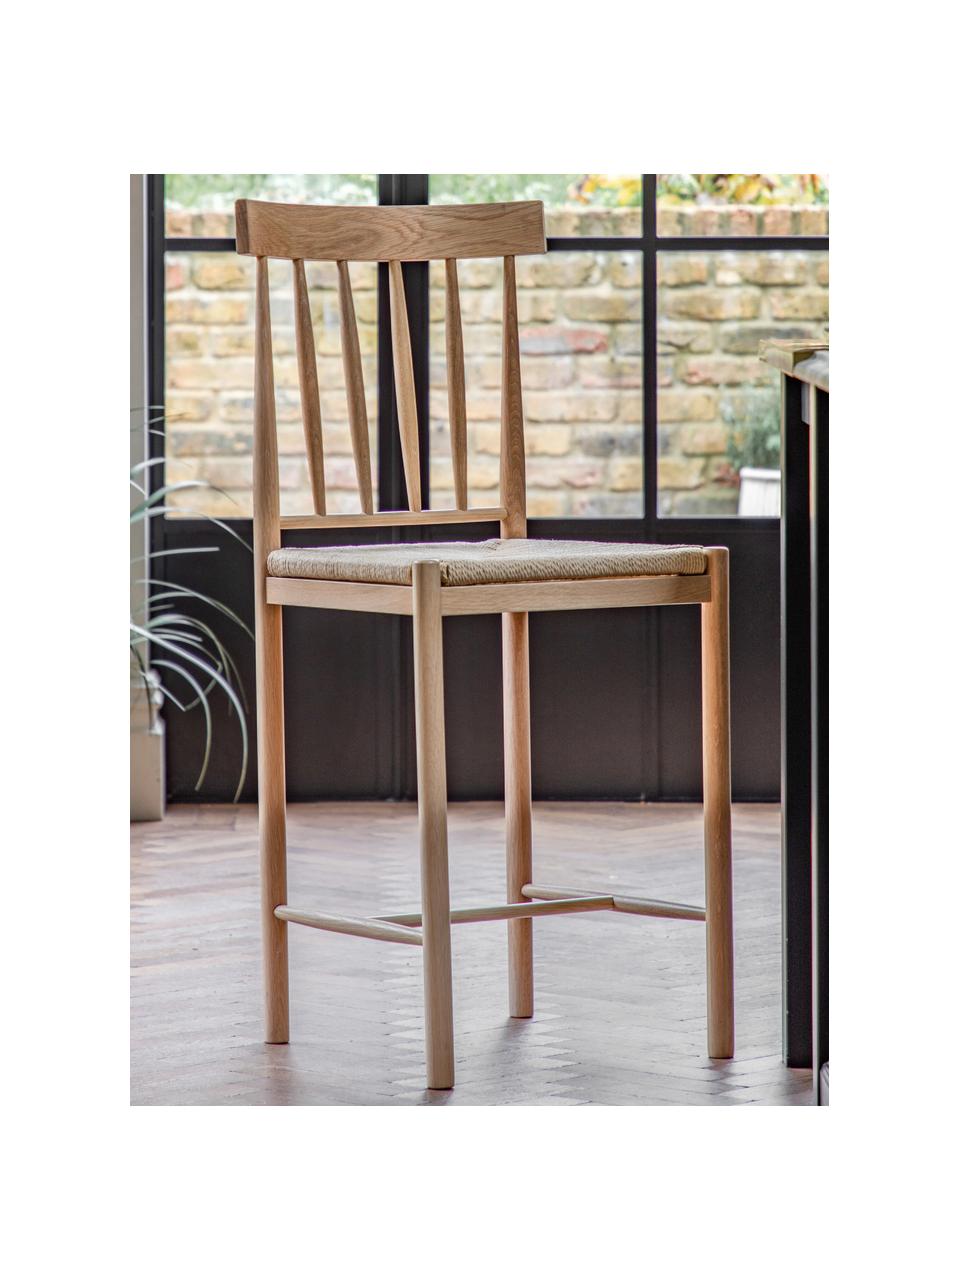 Ručně vyrobené barové židle z dubového dřeva Eton, 2 ks, Dubové dřevo, světle béžová, Š 46 cm, V 111 cm